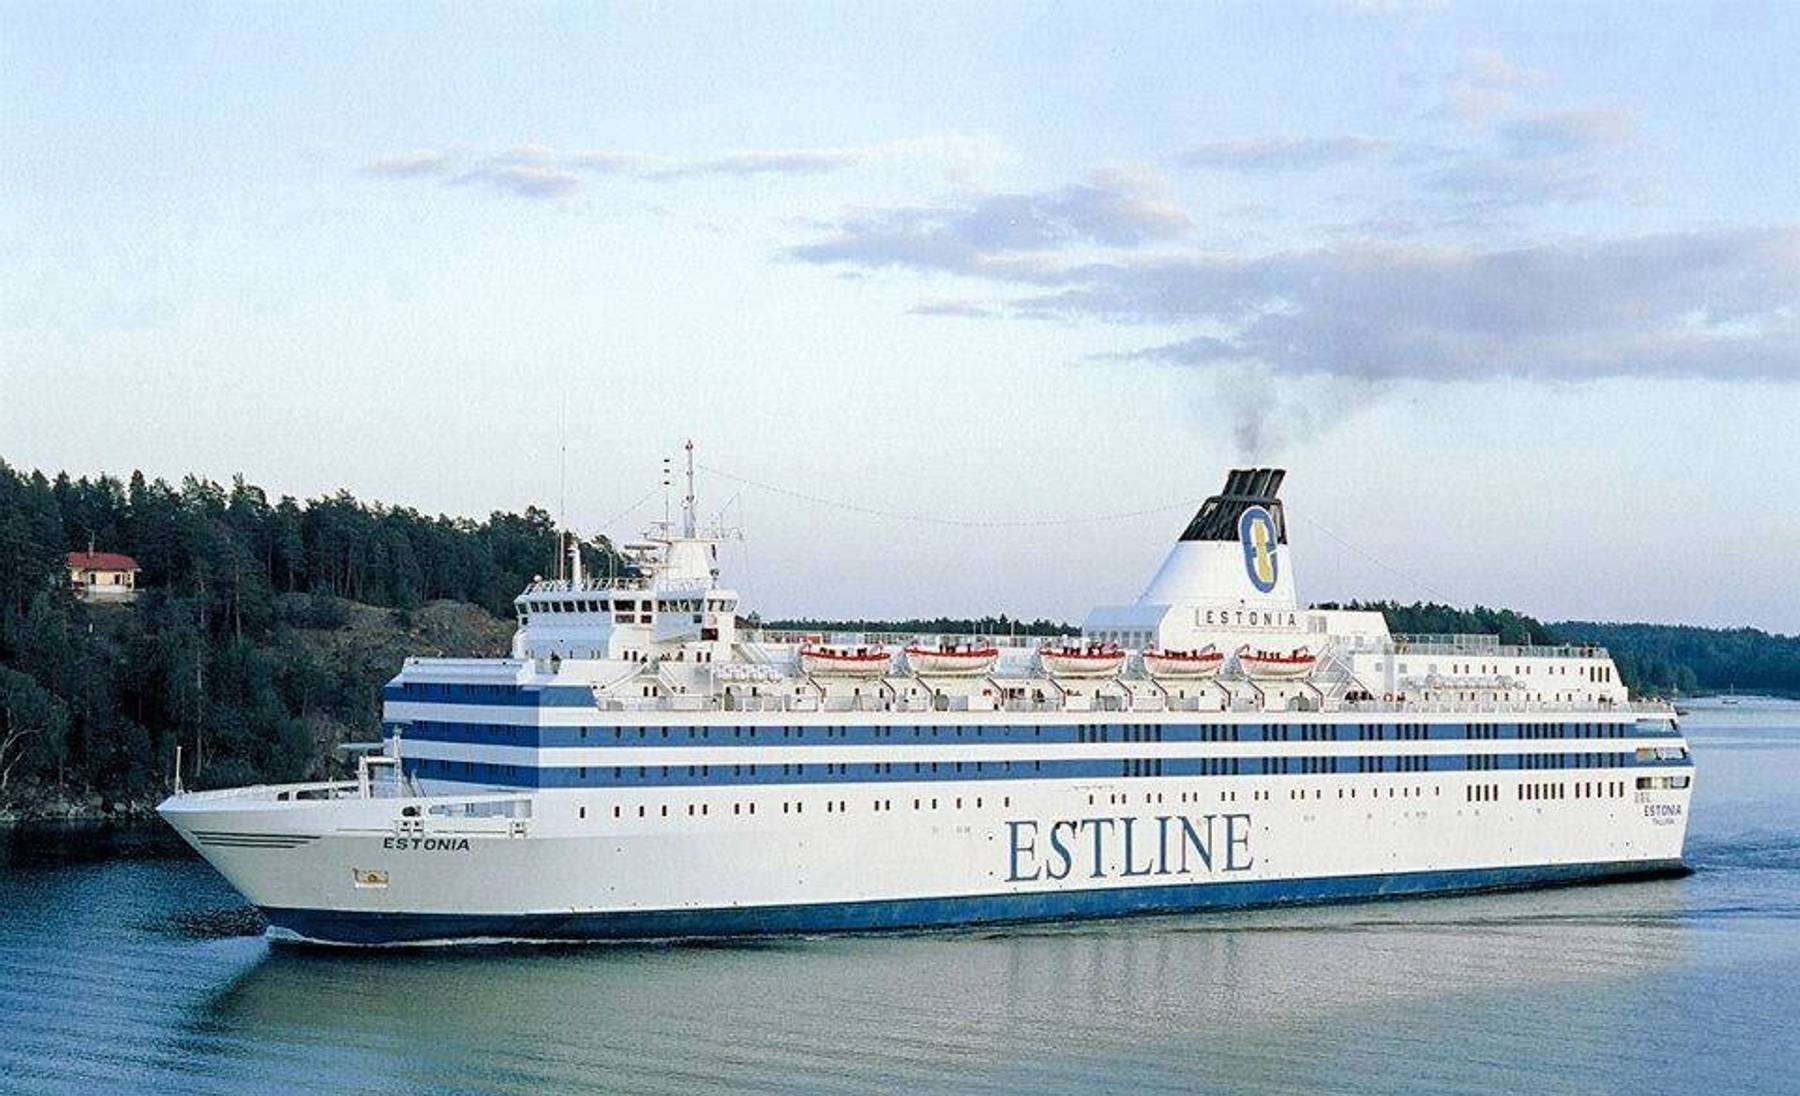 MS Estonia